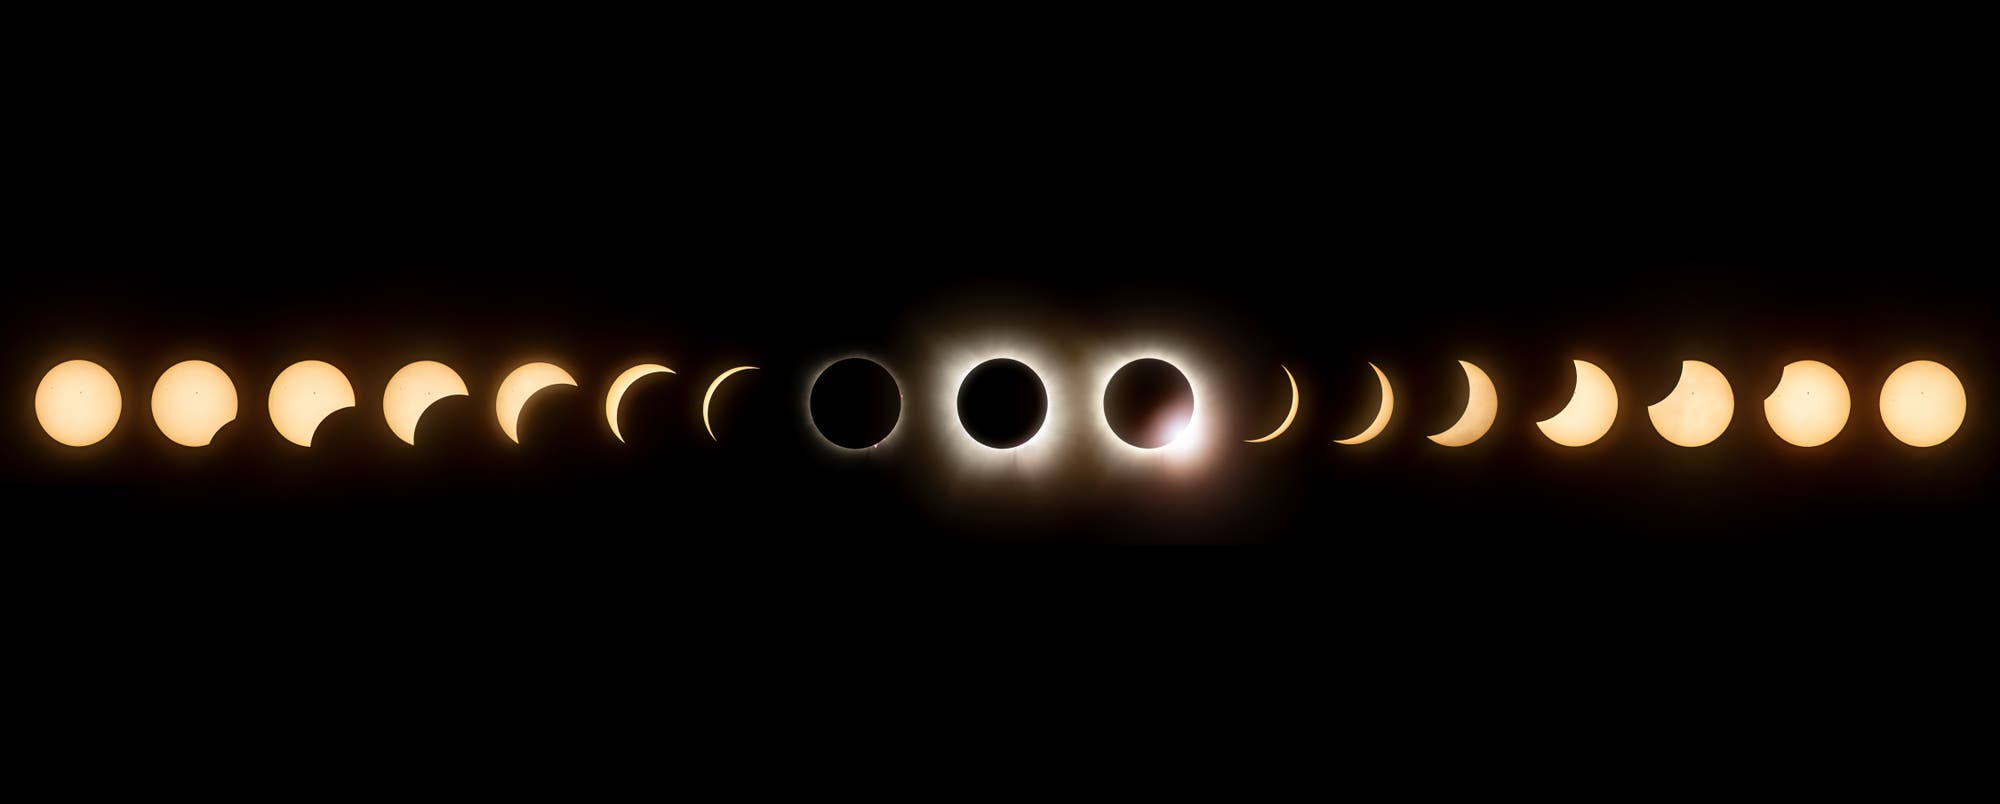 Kompositbild von 17 Einzelaufnahmen, bei denen der Mondschatten allmählich die Sonne bis zu einer totalen Finsternis verdeckt und wieder frei gibt